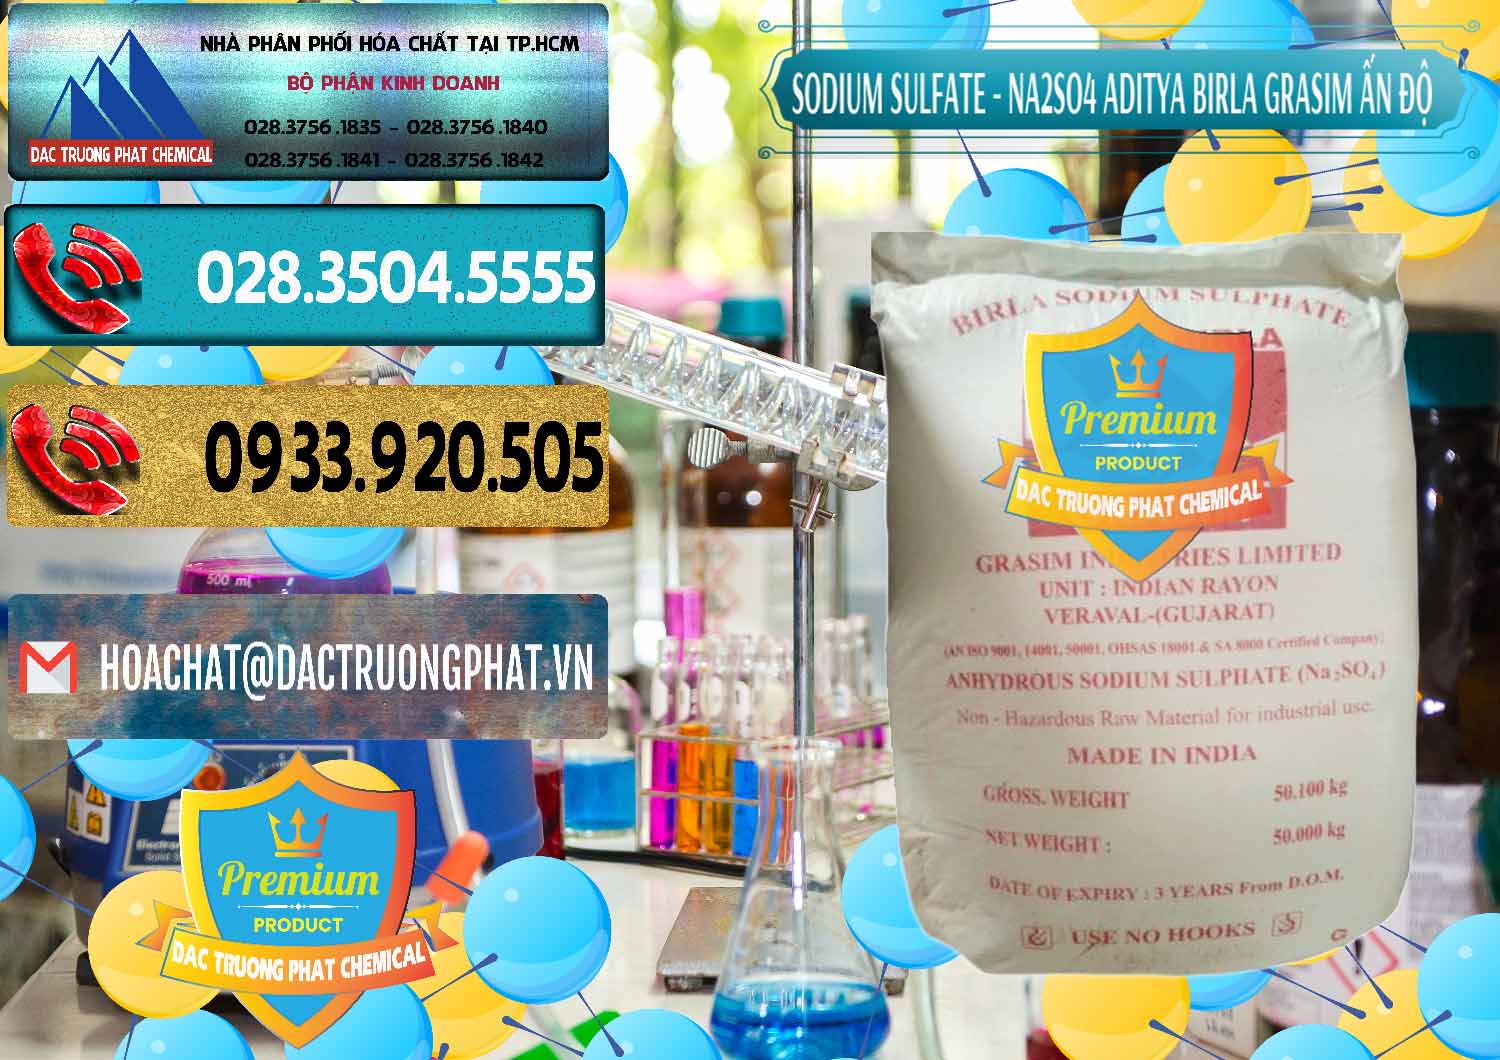 Nhà cung cấp _ bán Sodium Sulphate - Muối Sunfat Na2SO4 Grasim Ấn Độ India - 0356 - Đơn vị chuyên nhập khẩu - phân phối hóa chất tại TP.HCM - hoachatdetnhuom.com